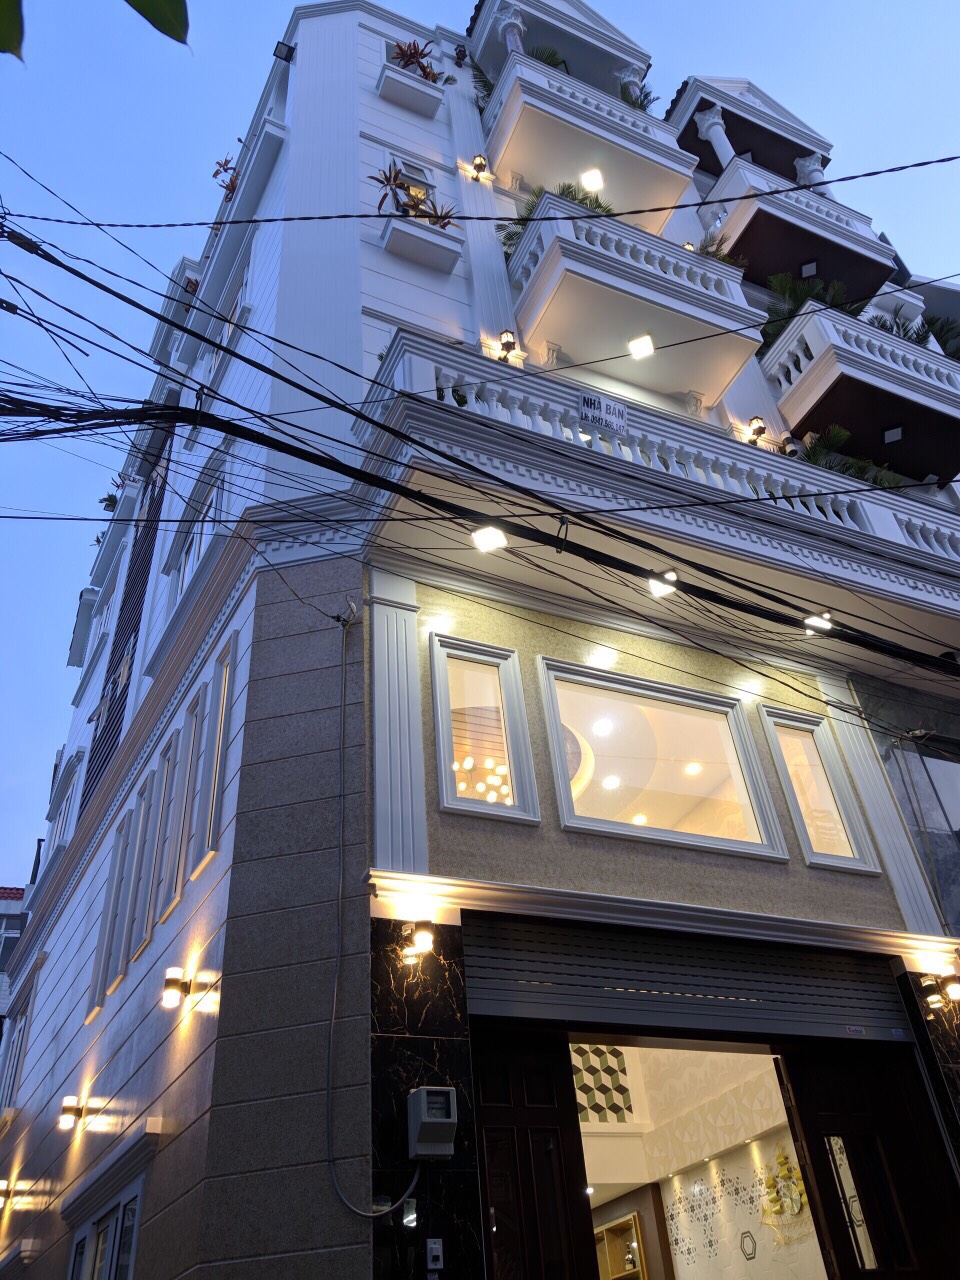 Chính chủ cần bán nhà phố riêng 3 tầng, Nguyễn Văn Khối, Quận Gò Vấp, giá 6,5ty TL